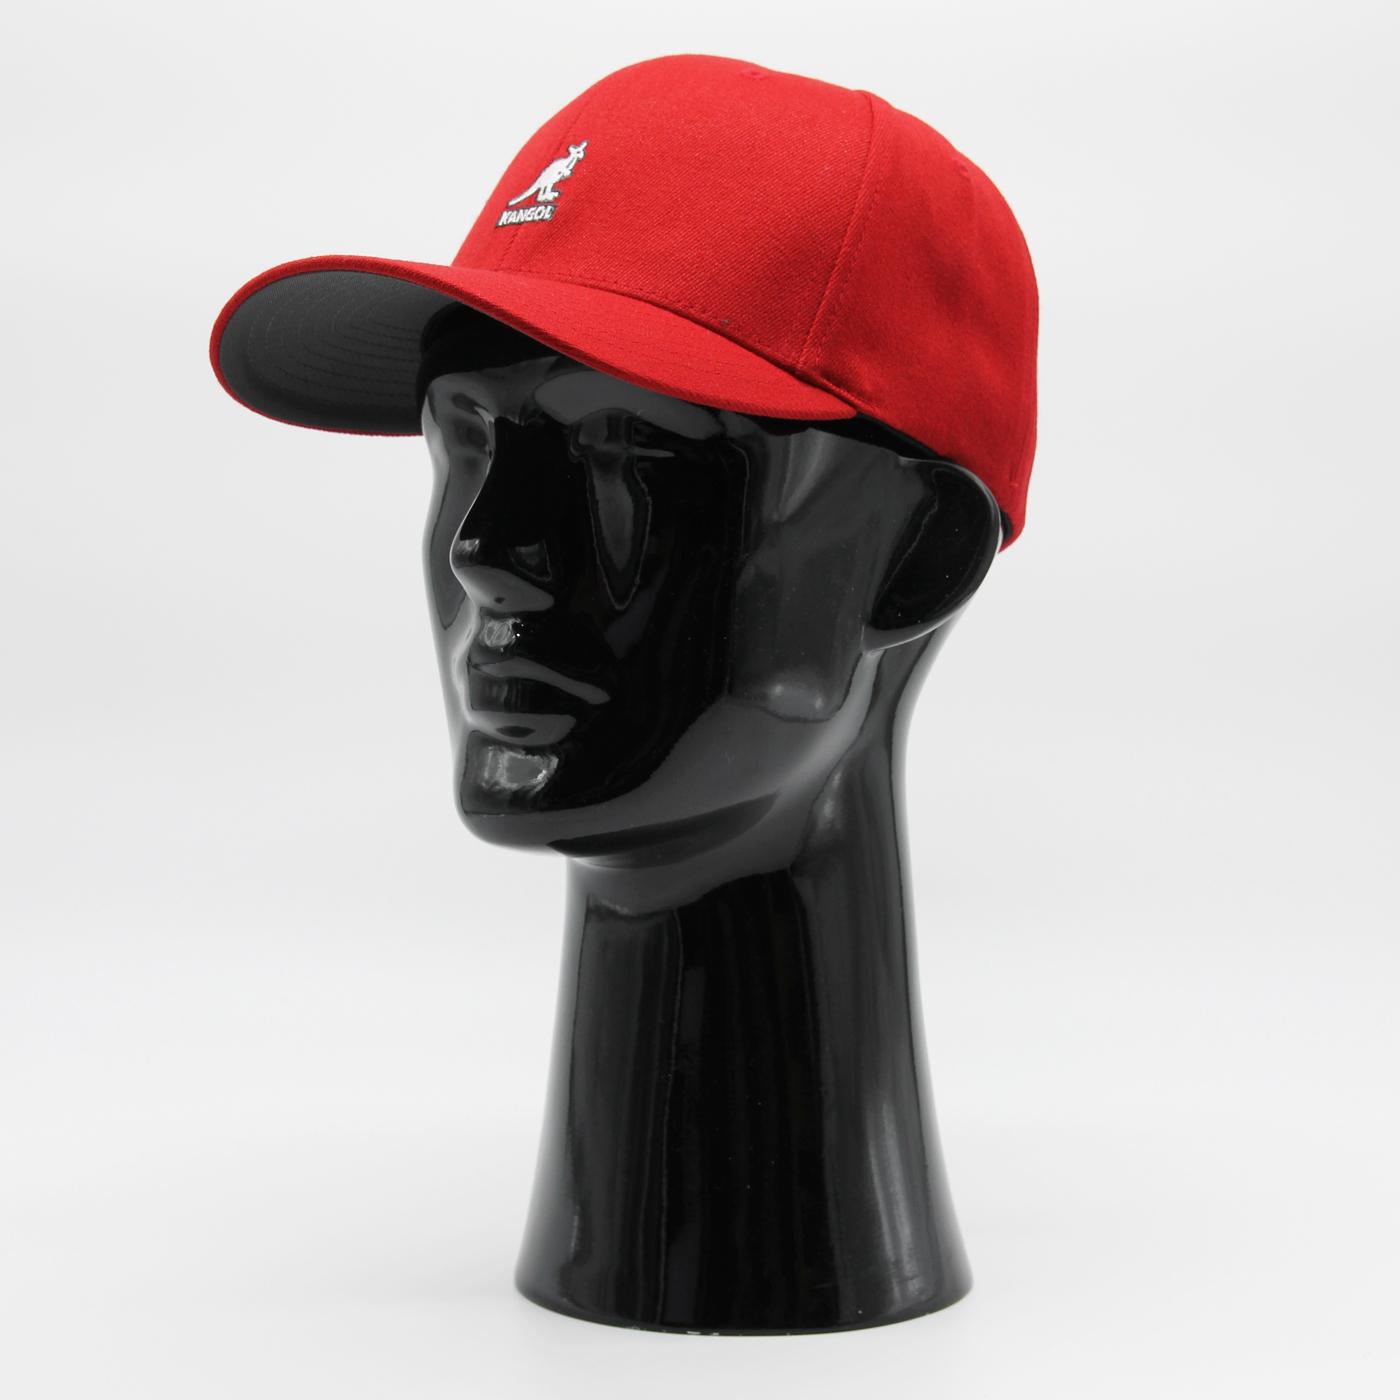 Kangol Wool Flexfit Baseball cap bucc-red - Shop-Tetuan